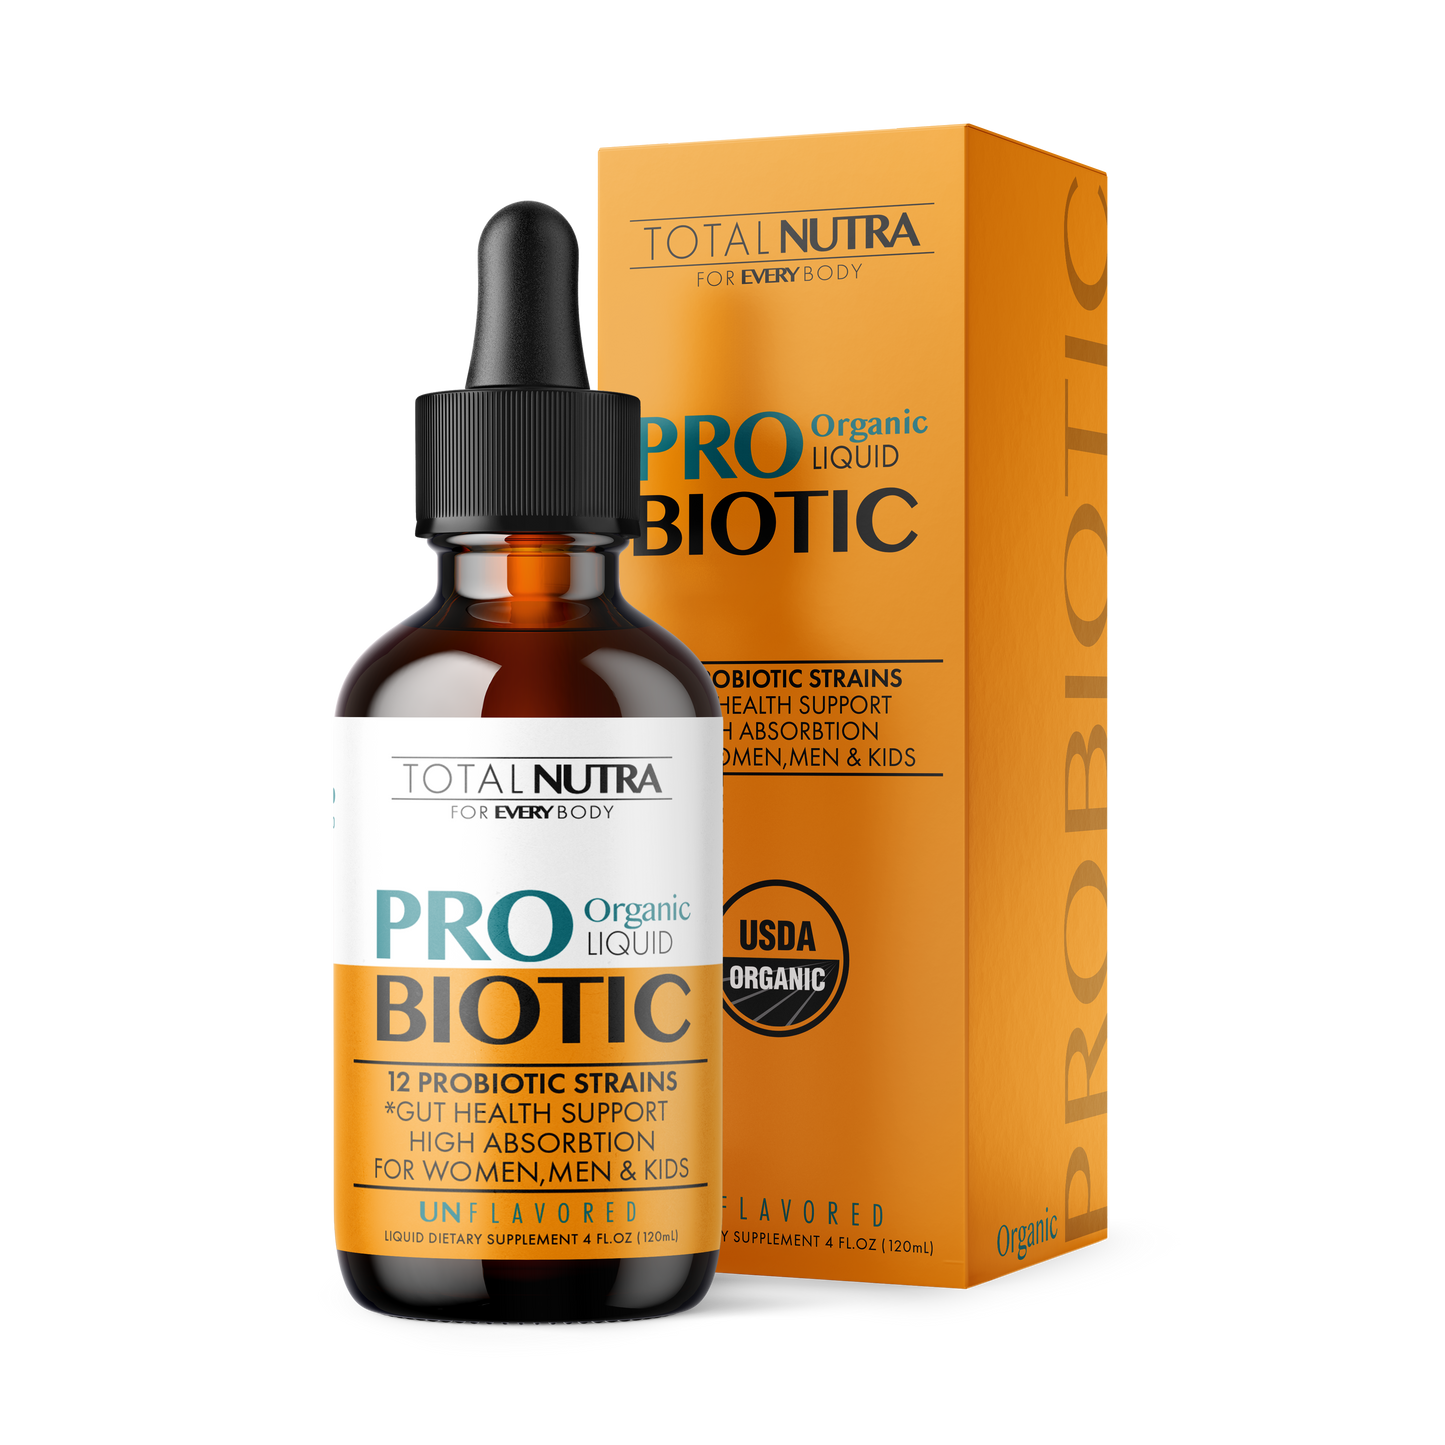 USDA Certified Organic Liquid Probiotic